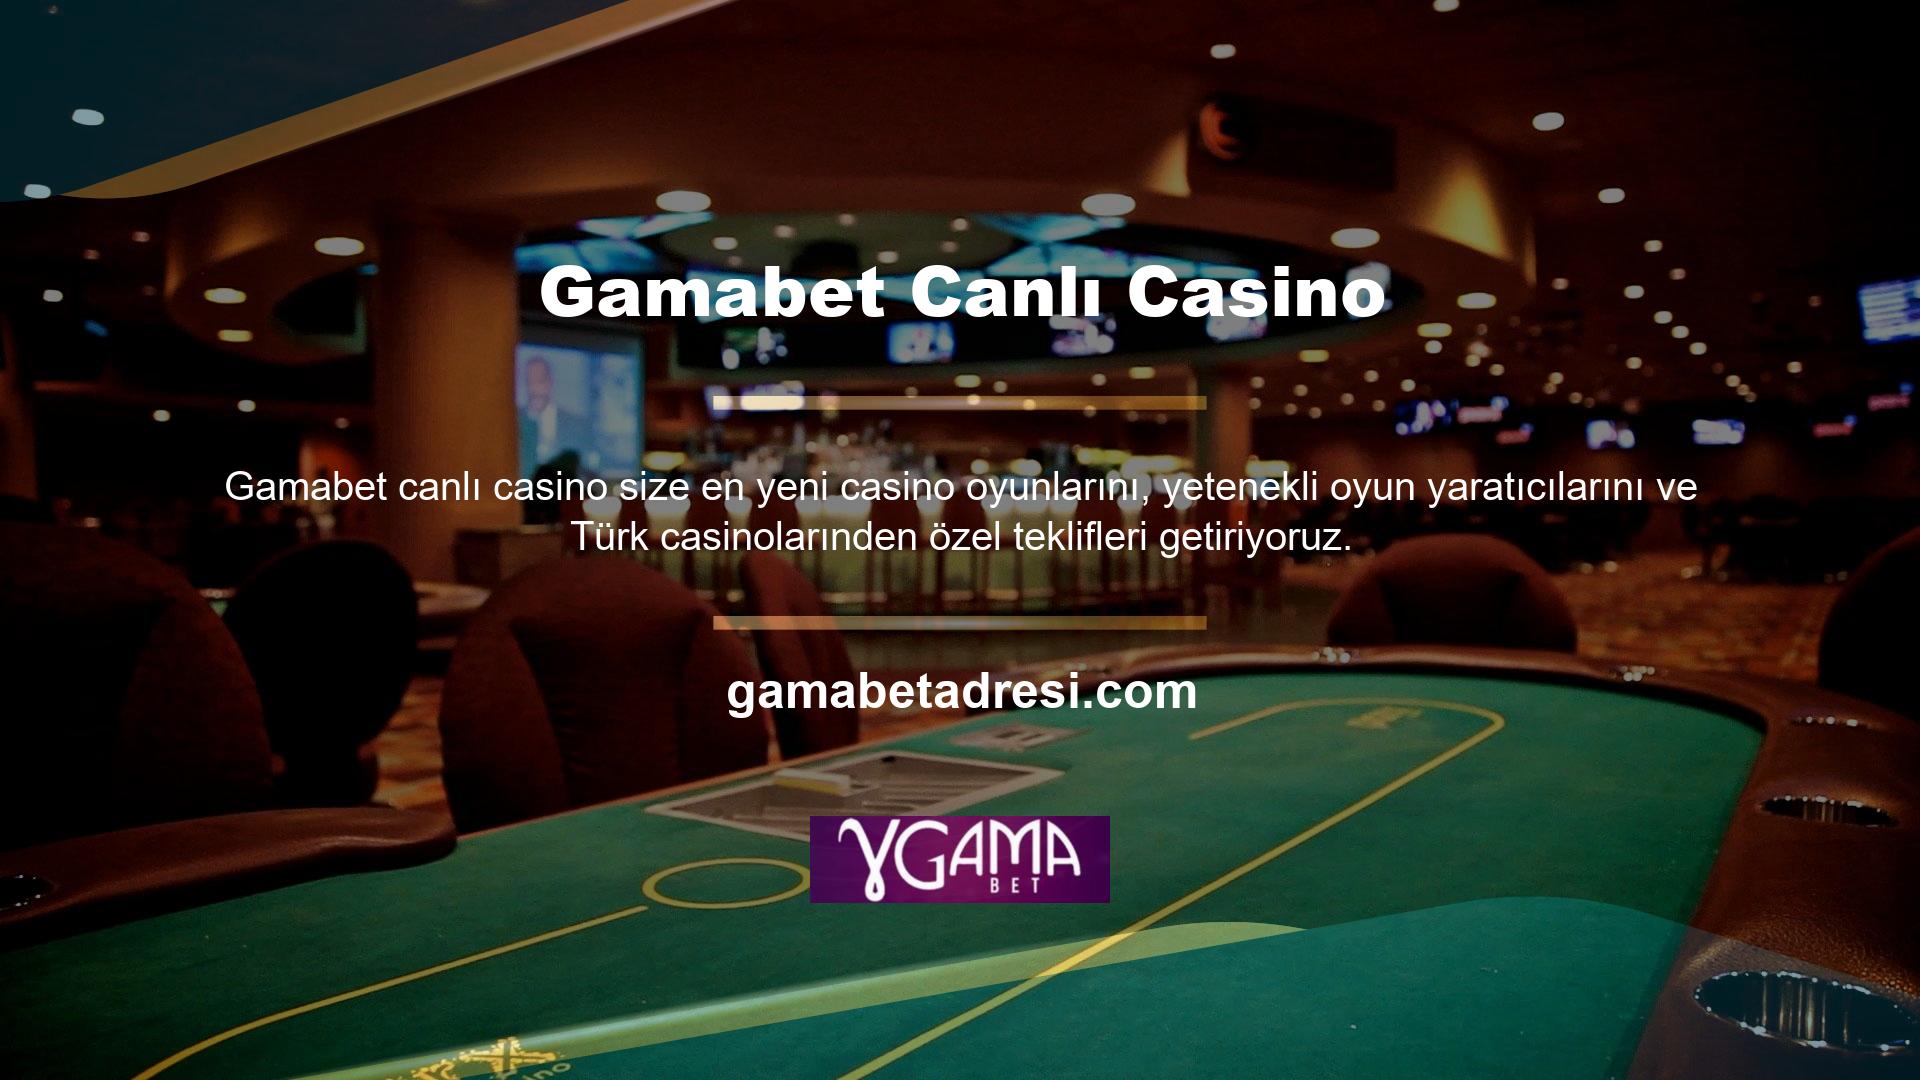 Gamabet casino sistemi 7/24 canlı oyunlar sunar